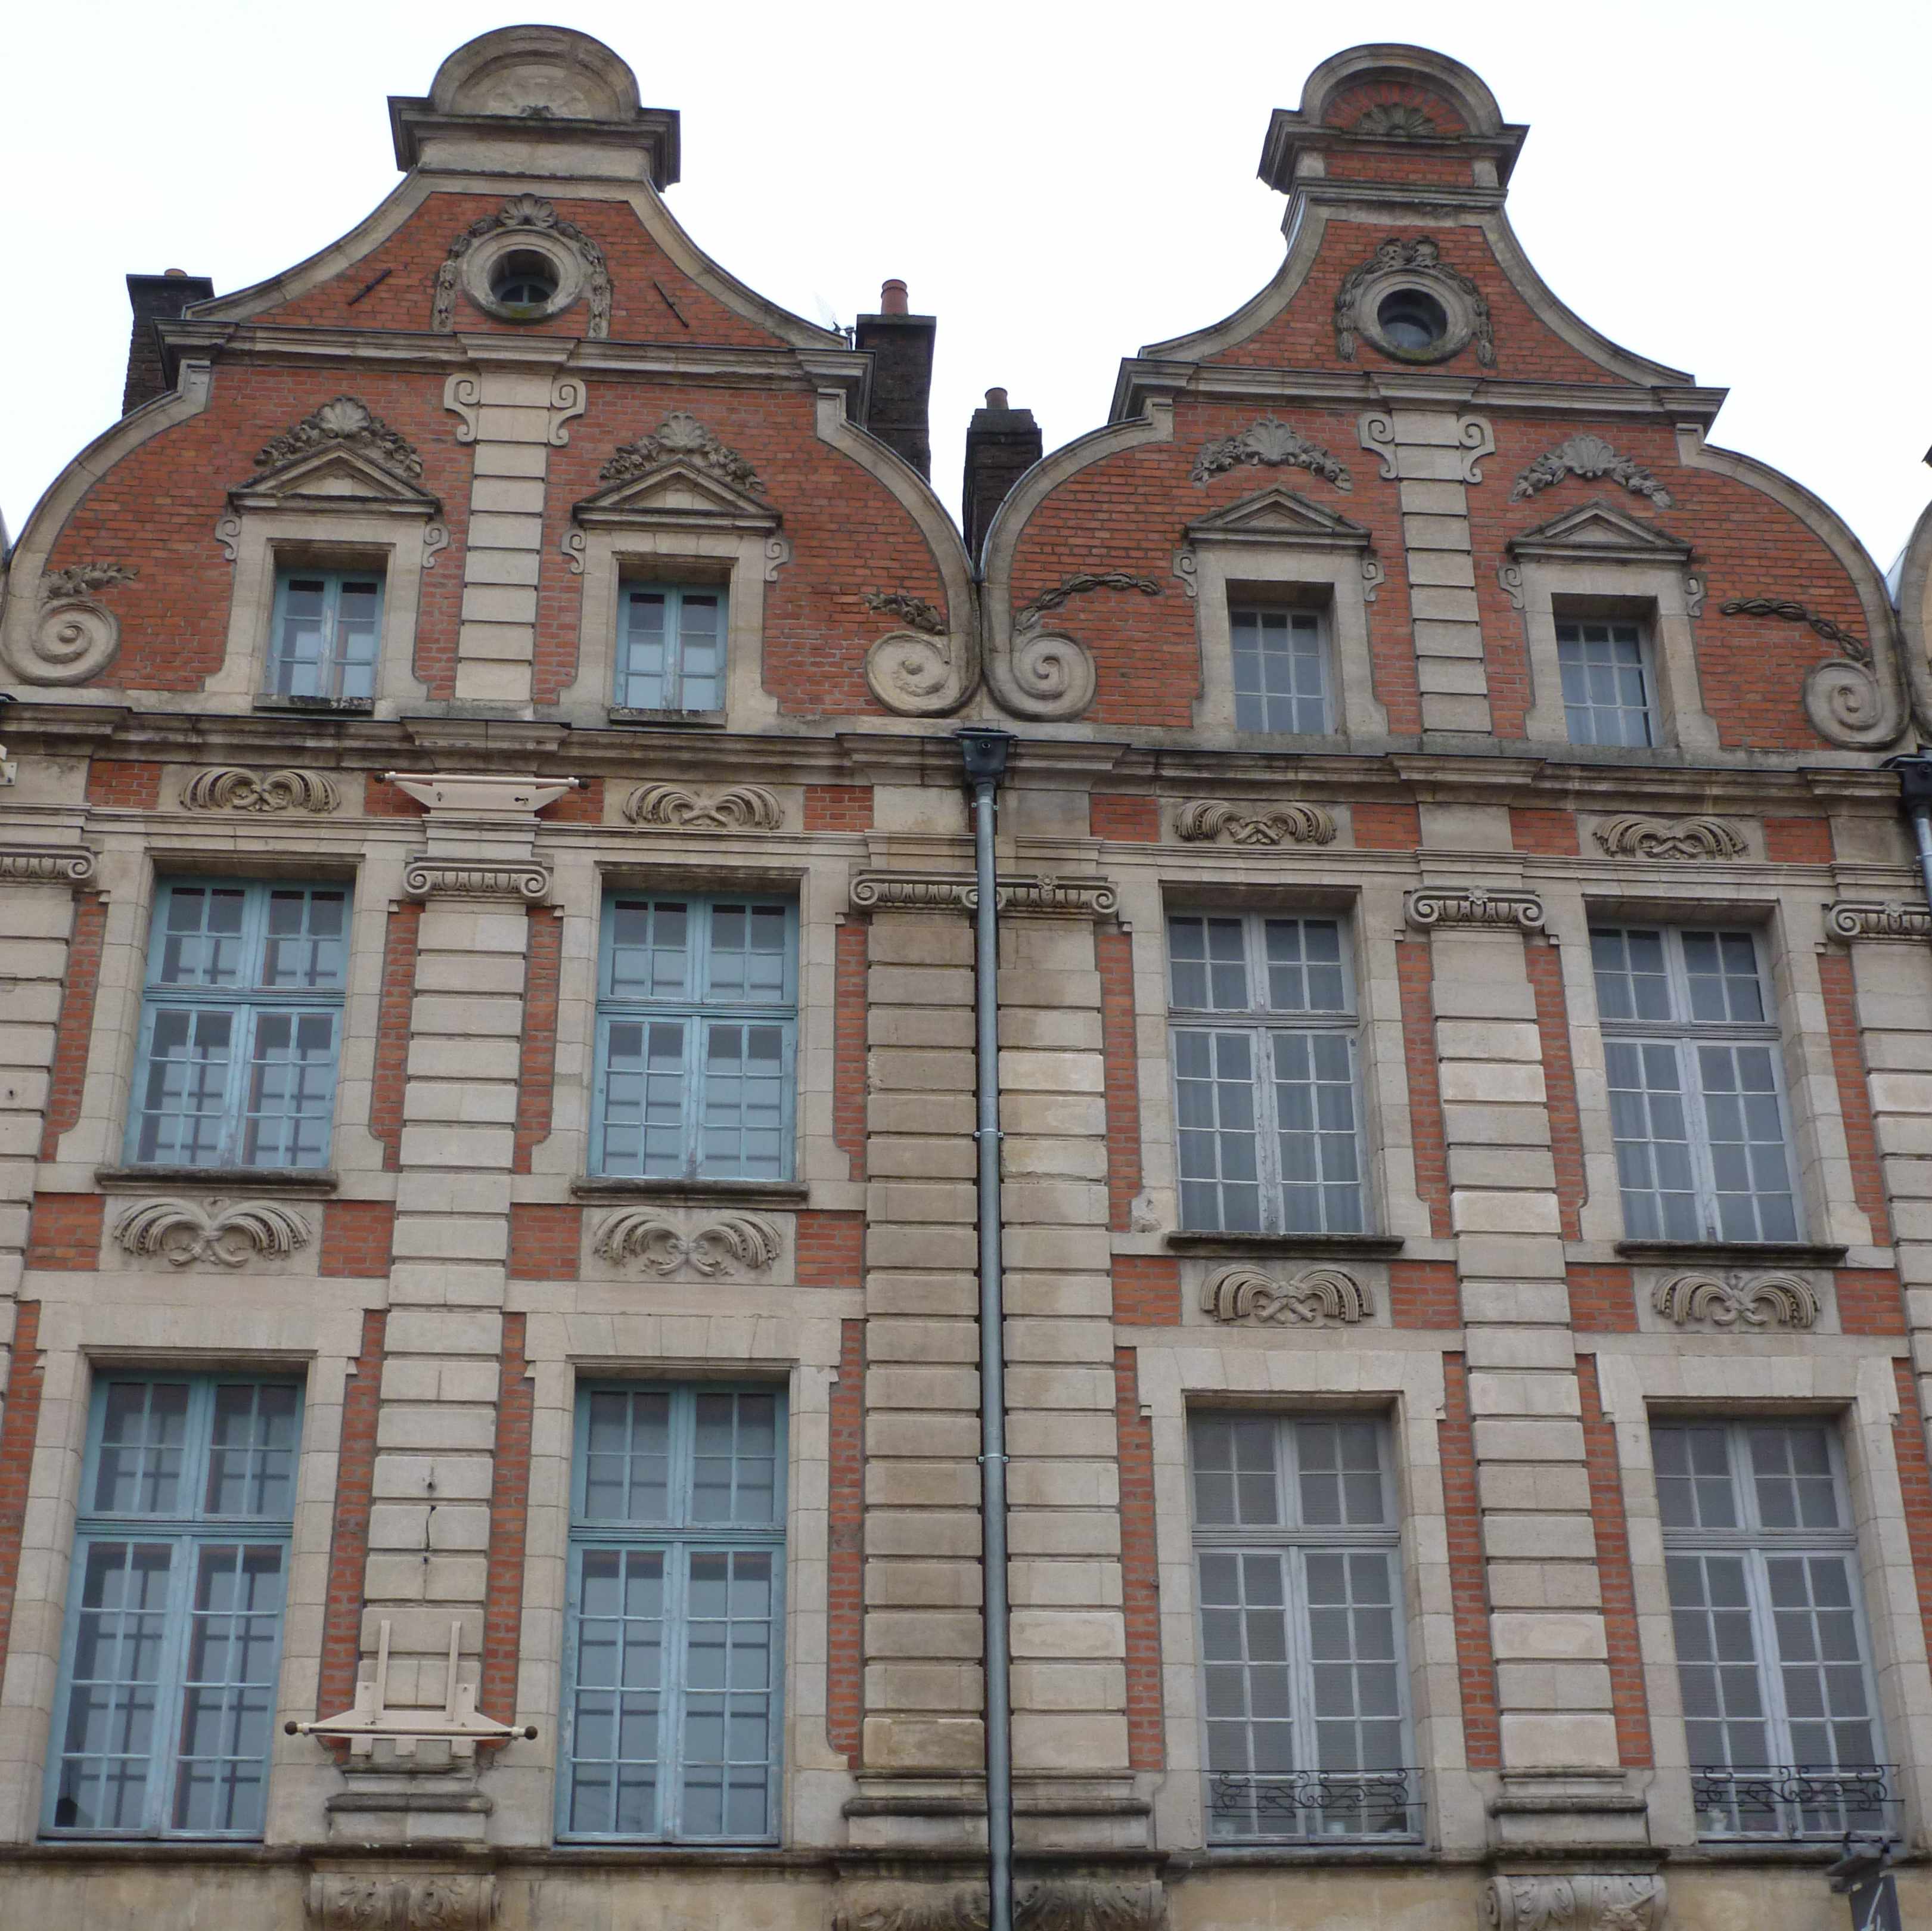 Maison brique pignon a volutes Arras place des heros 2012